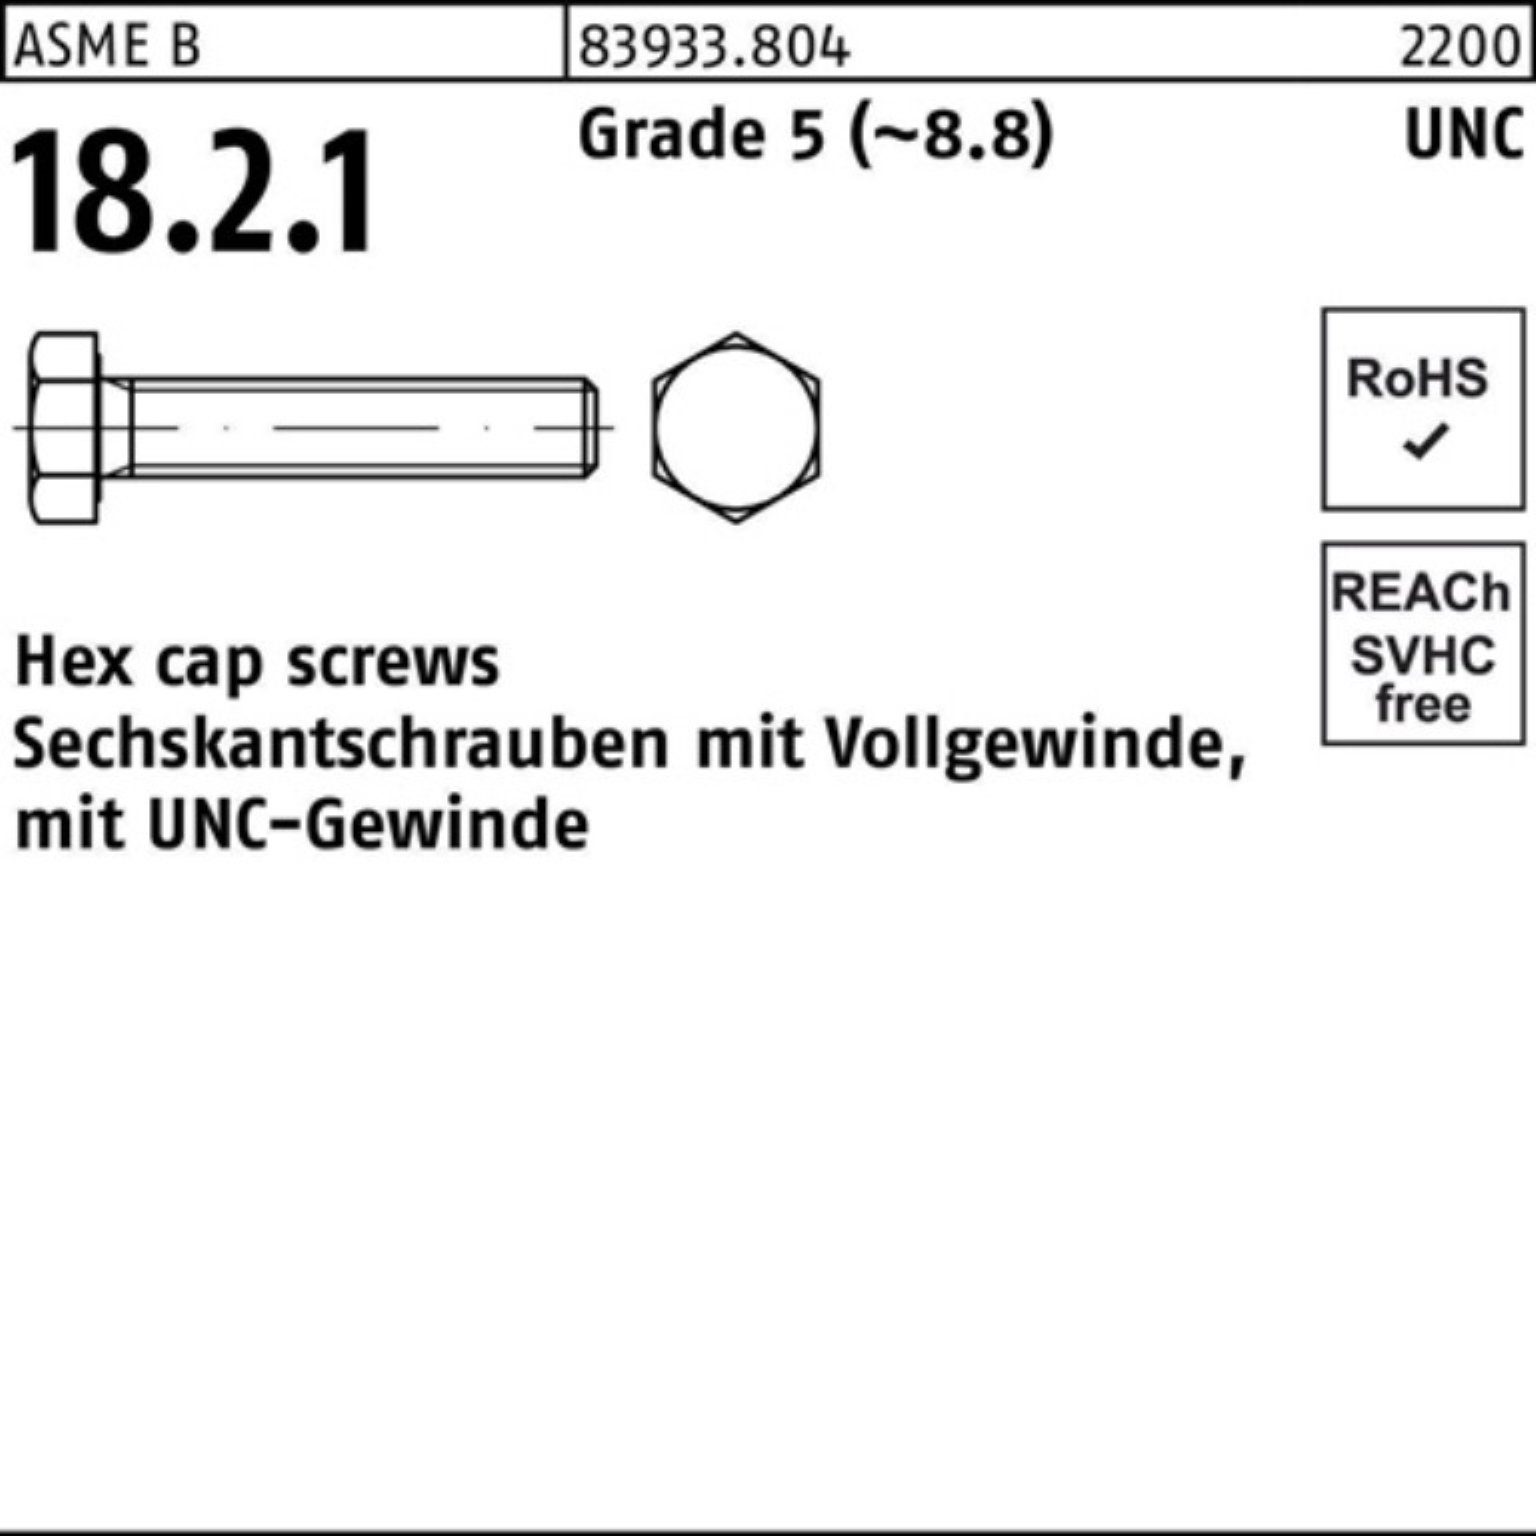 Reyher Sechskantschraube 100er Pack Sechskantschraube R 83933 UNC-Gewinde VG 1x 3 Grade 5 (8.8